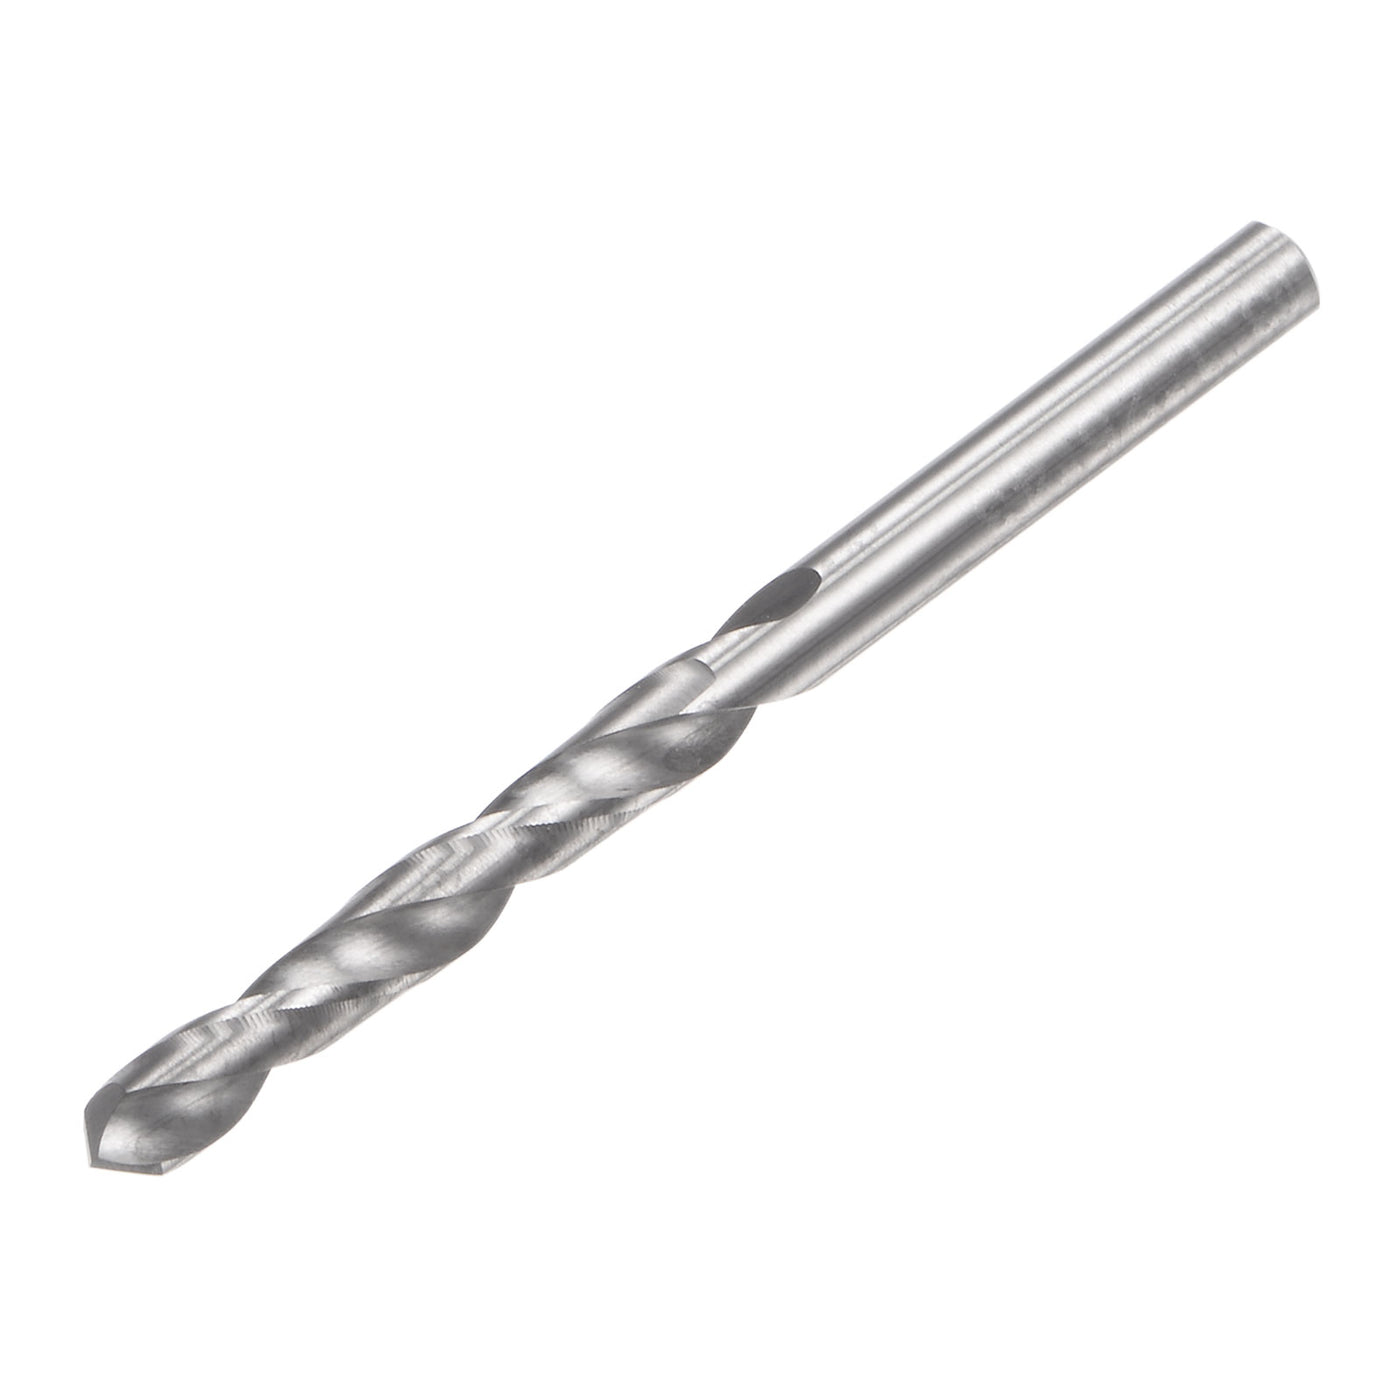 uxcell Uxcell 3.1mm C2/K20 Tungsten Carbide Straight Shank Spiral Flutes Twist Drill Bit